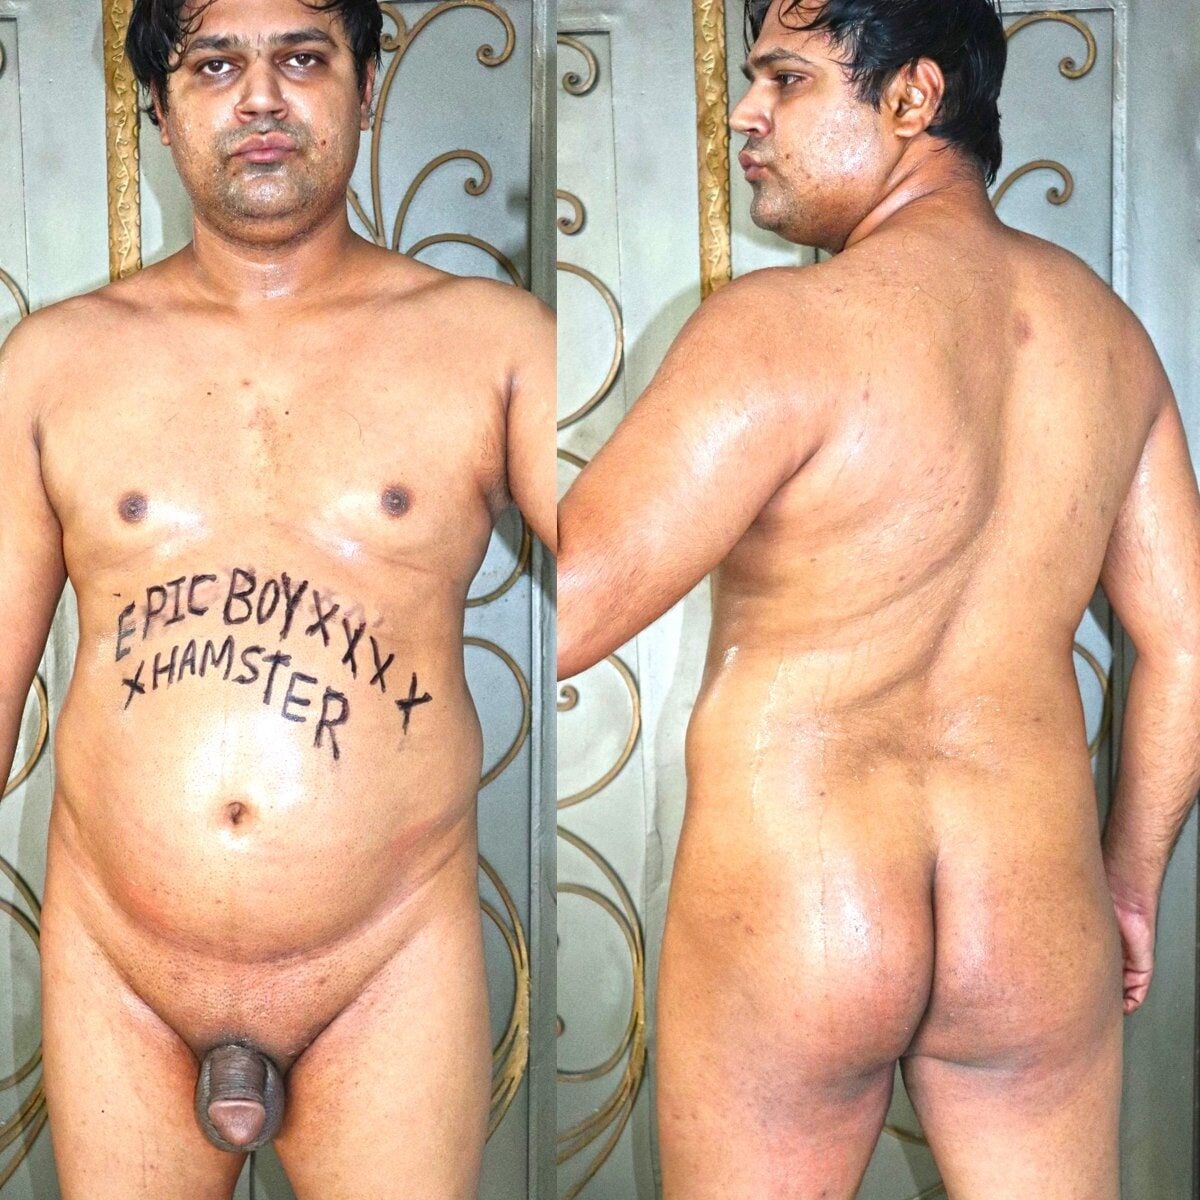 Pakistani Boy Waqas Showing Big Ass in Public